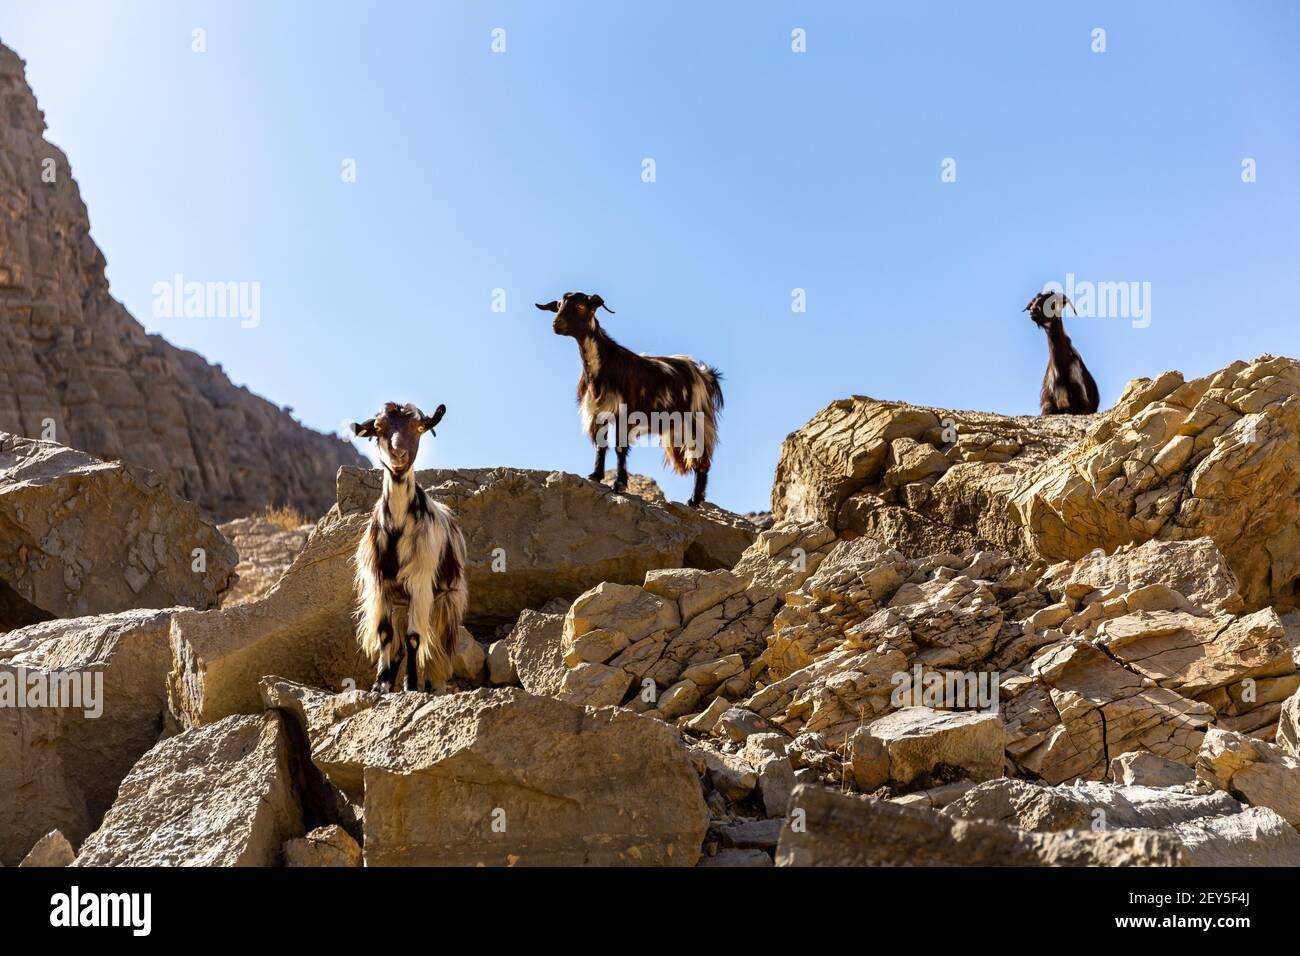 Tre capre nere e bianche (does, nannies) che si trovano sulle rocce della catena montuosa di Jebel Jais, Emirati Arabi Uniti. Foto Stock